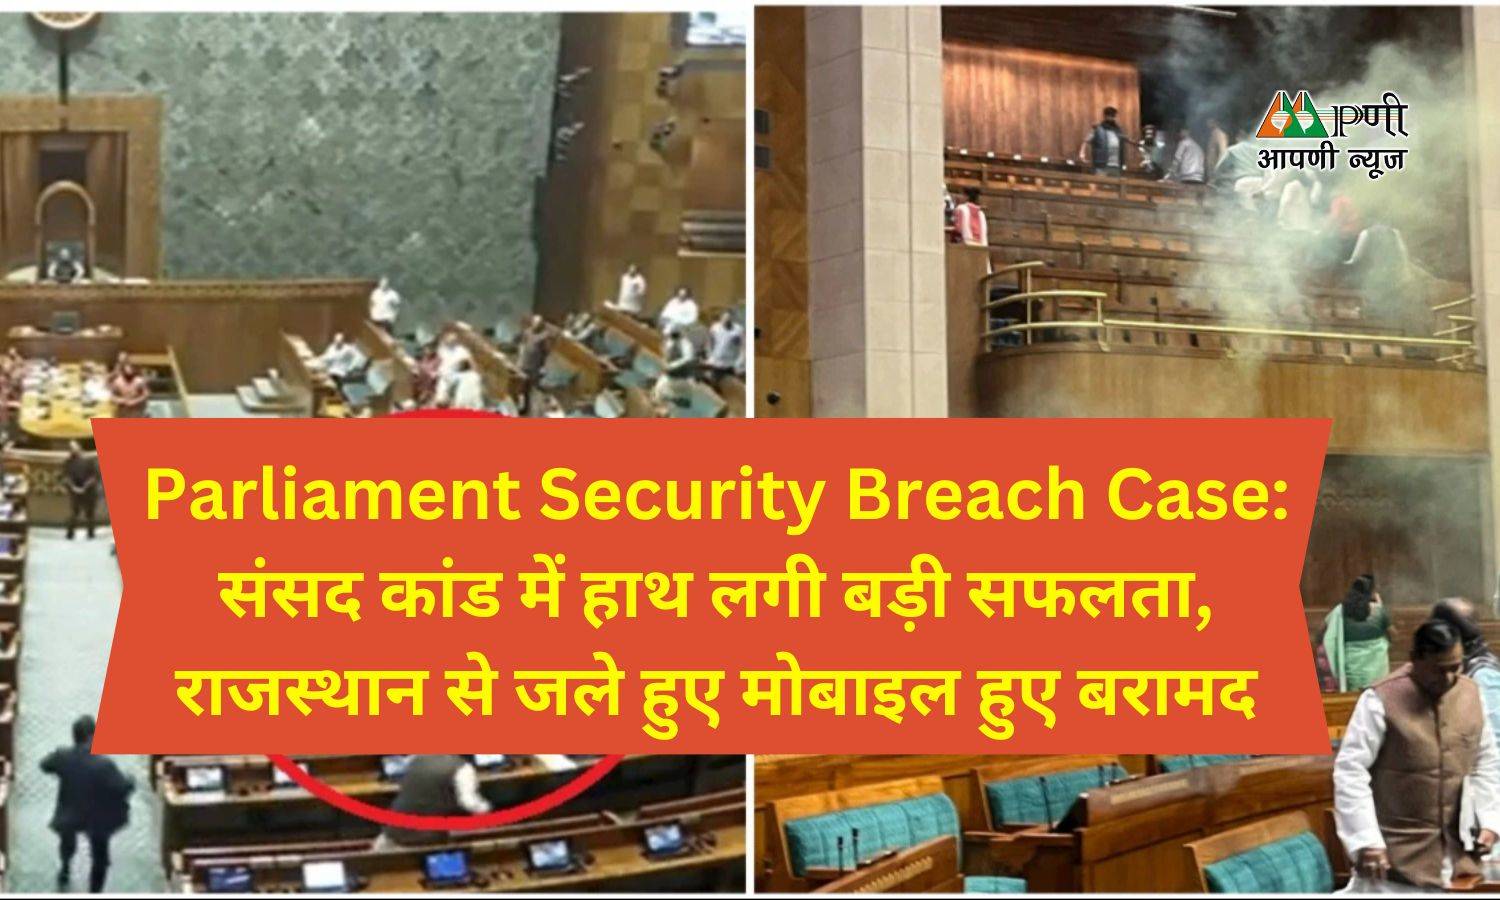 Parliament Security Breach Case: संसद कांड में हाथ लगी बड़ी सफलता, राजस्थान से जले हुए मोबाइल हुए बरामद